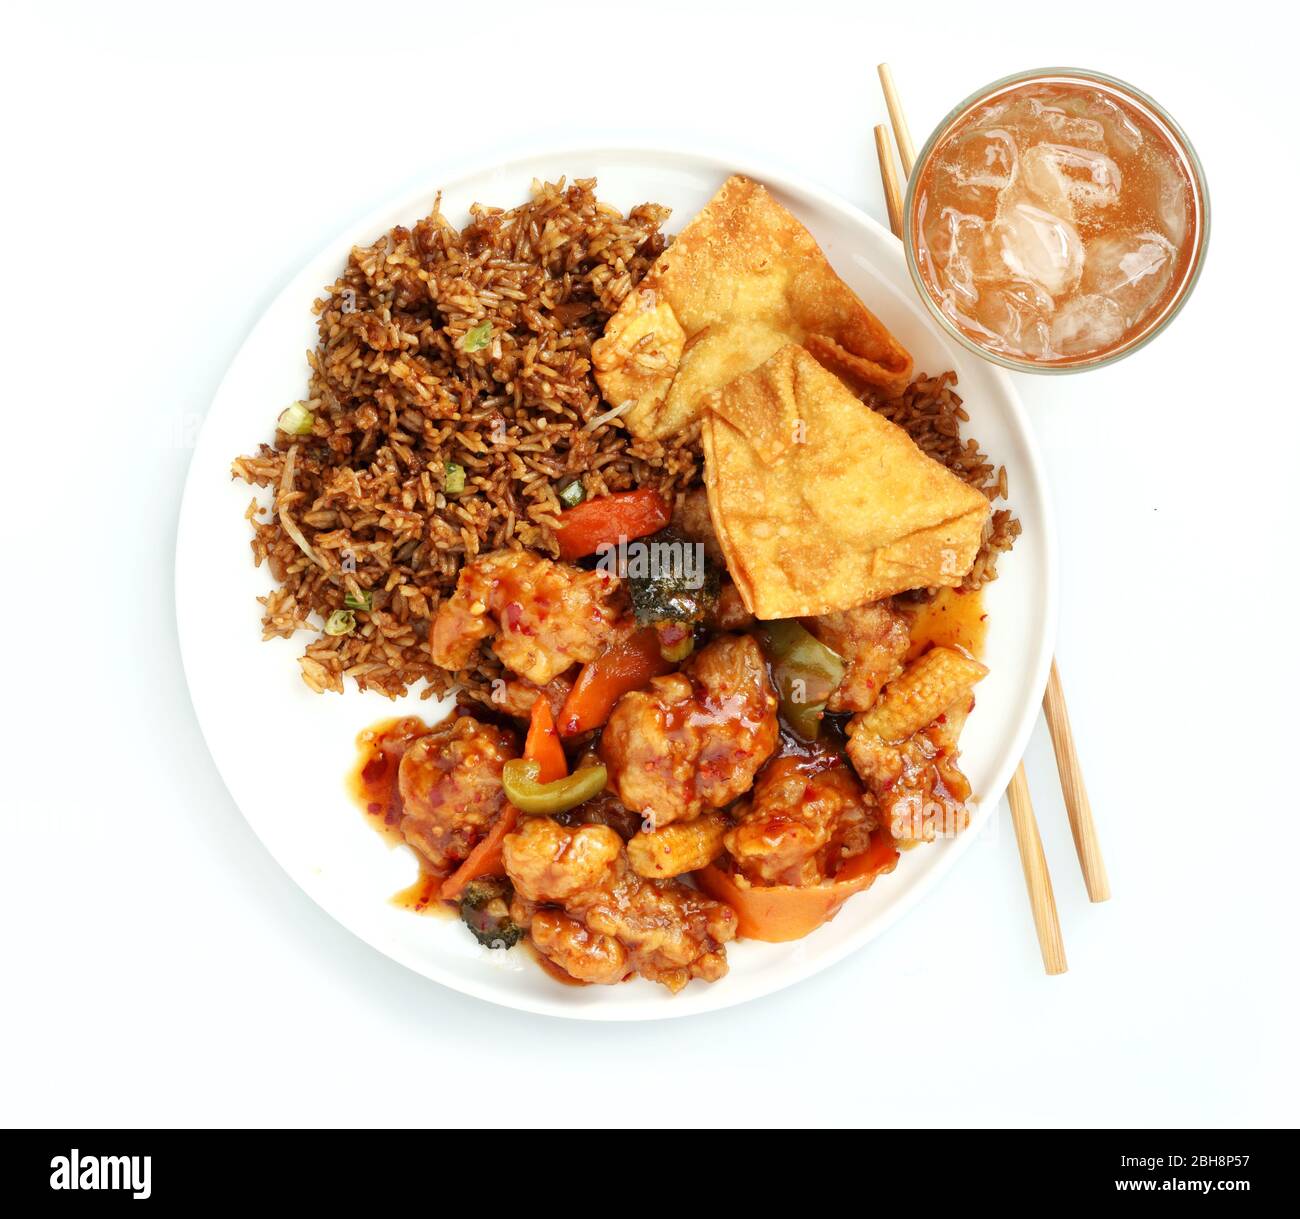 Diese klassische frittierte chinesische Mahlzeit kann köstlich sein, ist aber ein Beispiel für ungesunde Ernährung Stockfoto